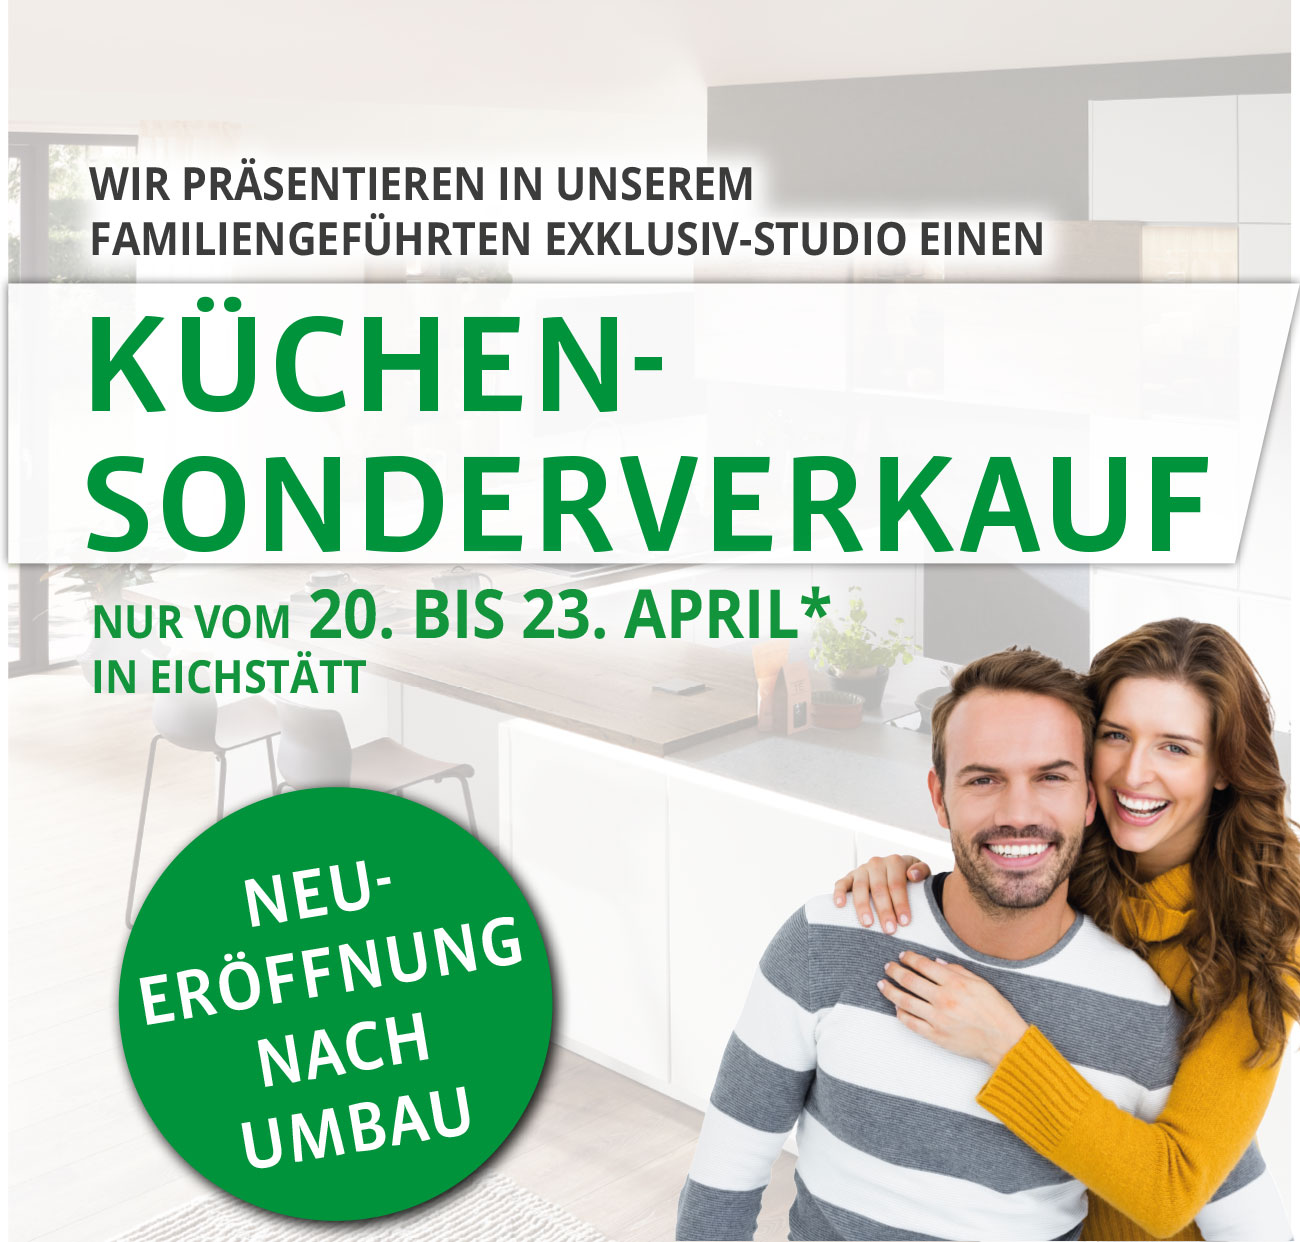 Große Neu-Eröffnung nach Umbau mit großem Küchen-Sonderverkauf vom 20. - 23. April bei Küche & Raum in Eichstätt